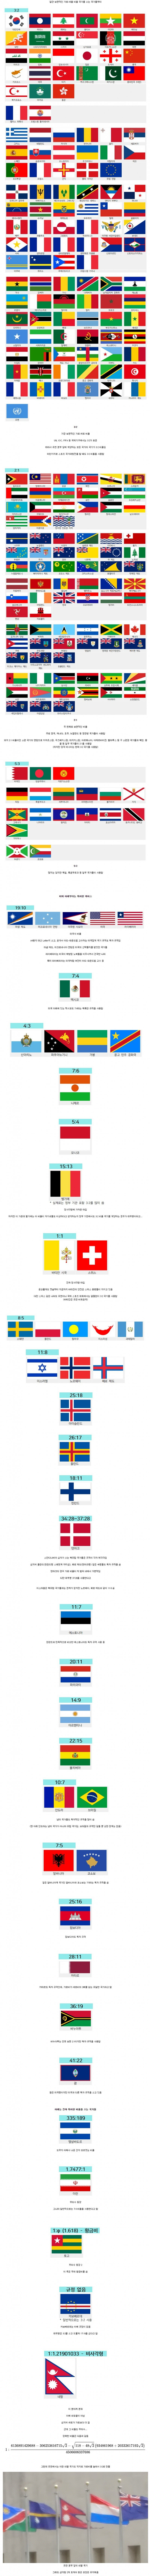 17 각 나라 국기의 가로세로 비율.jpg